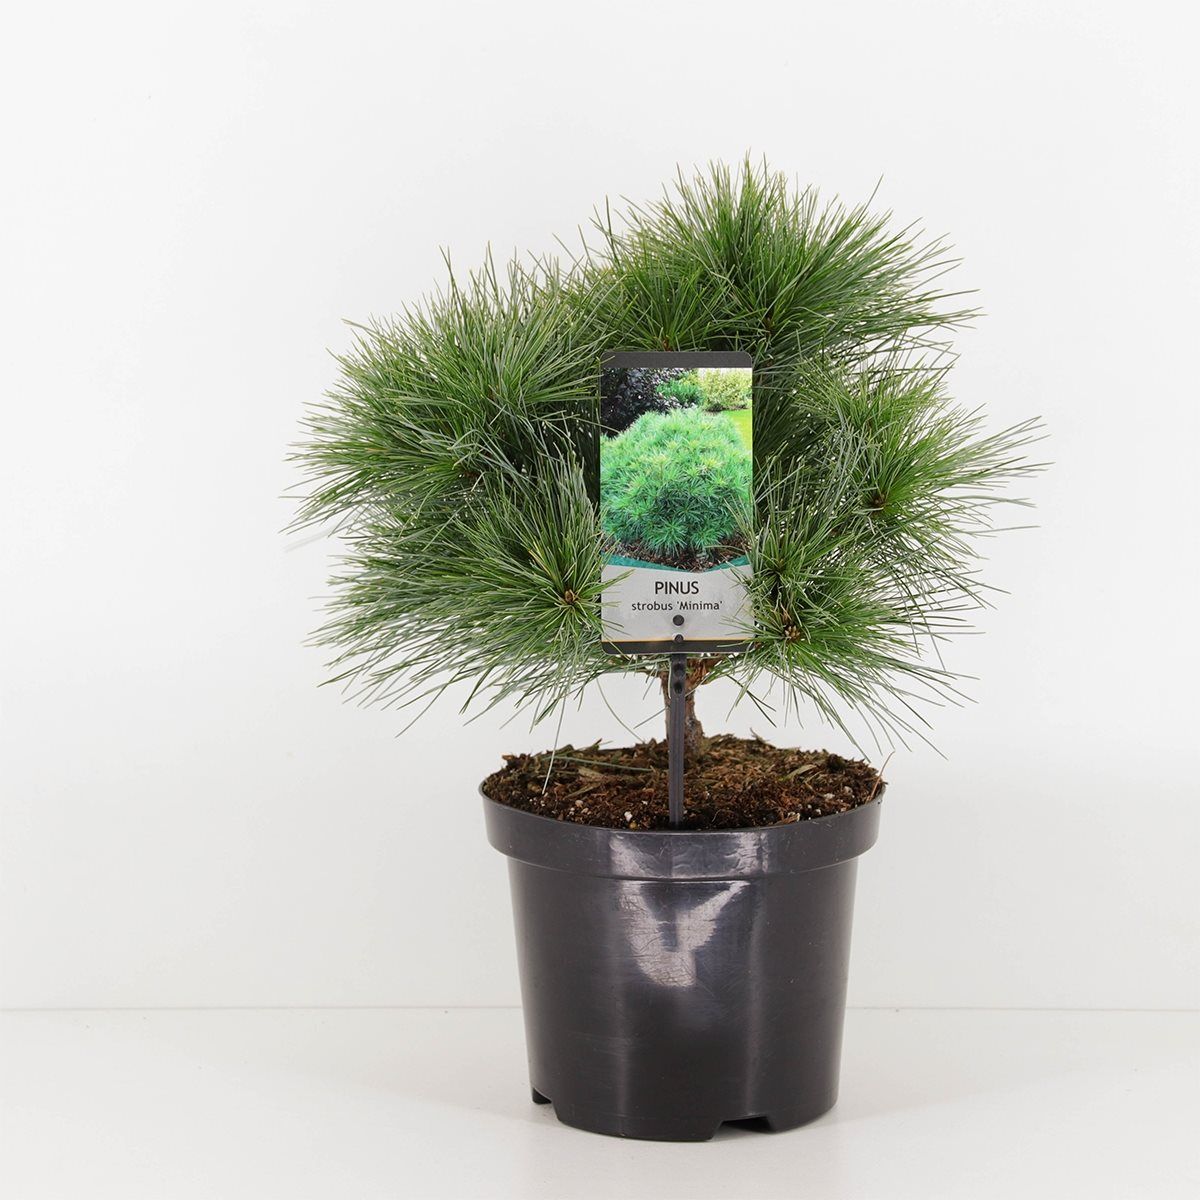 Pinus strobus "Minima" - Kääpiöstrobusmänty